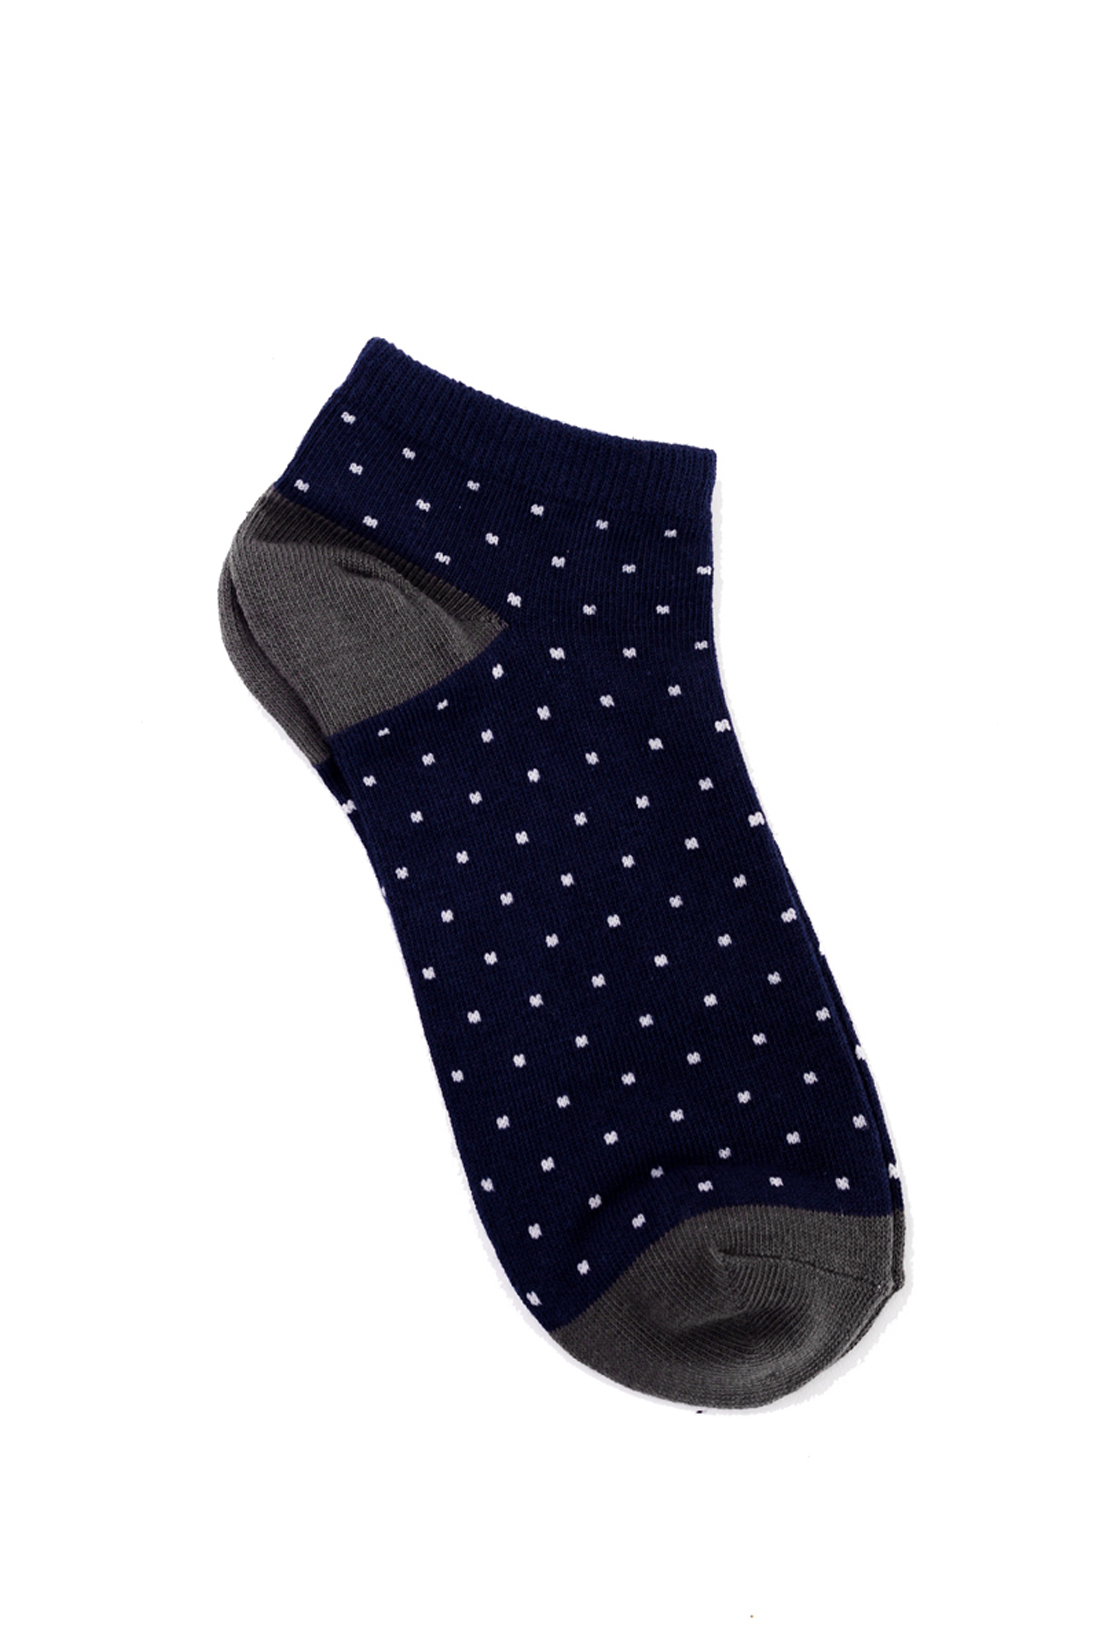 Низкие носки в горошек (арт. baon B399002), размер 38/40, цвет синий